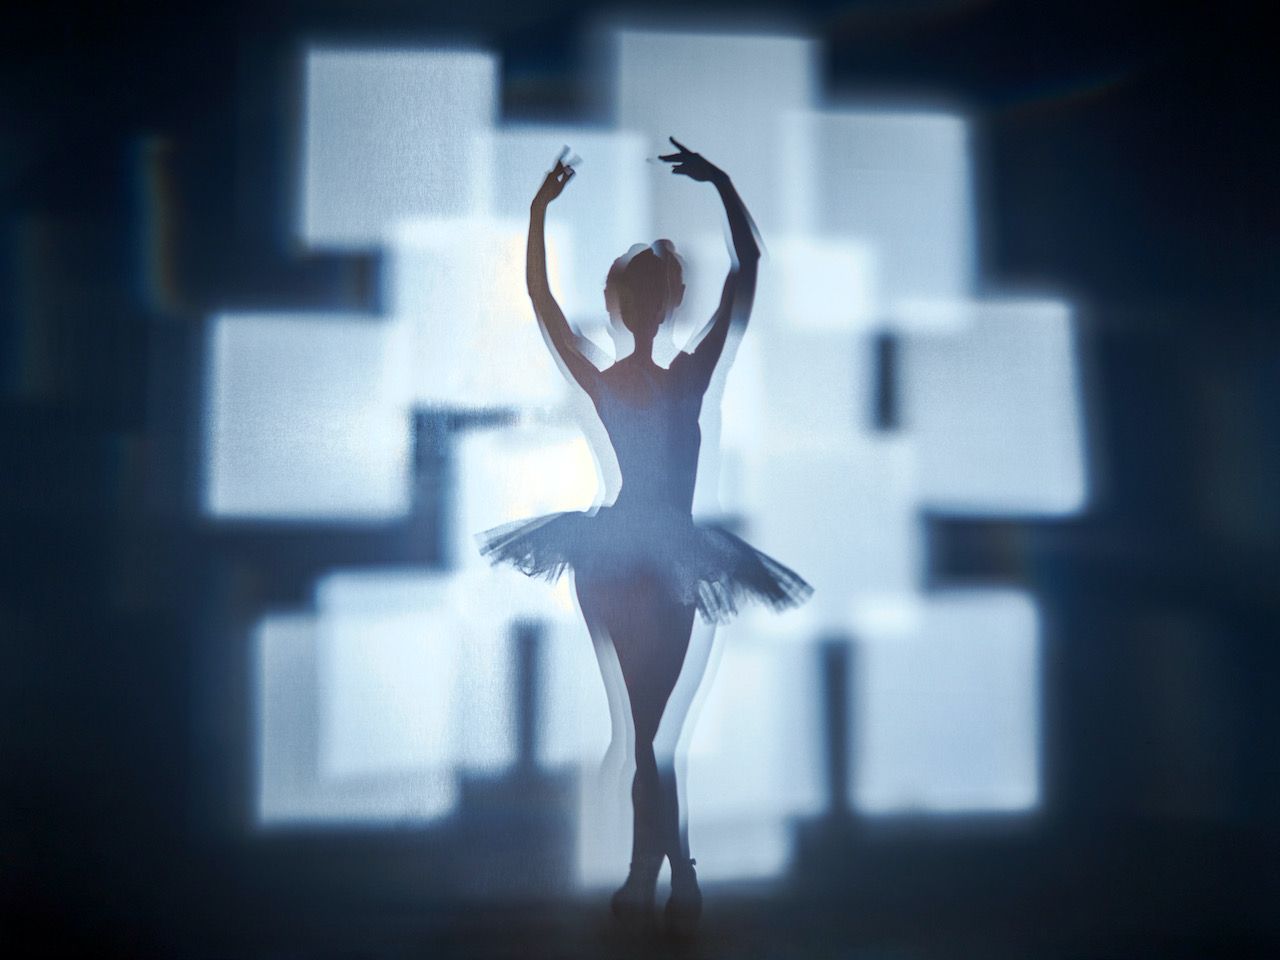 Michael Haegele fotografía abstracta silueta bailarina con cuadros luminosos superpuestos en el fondo